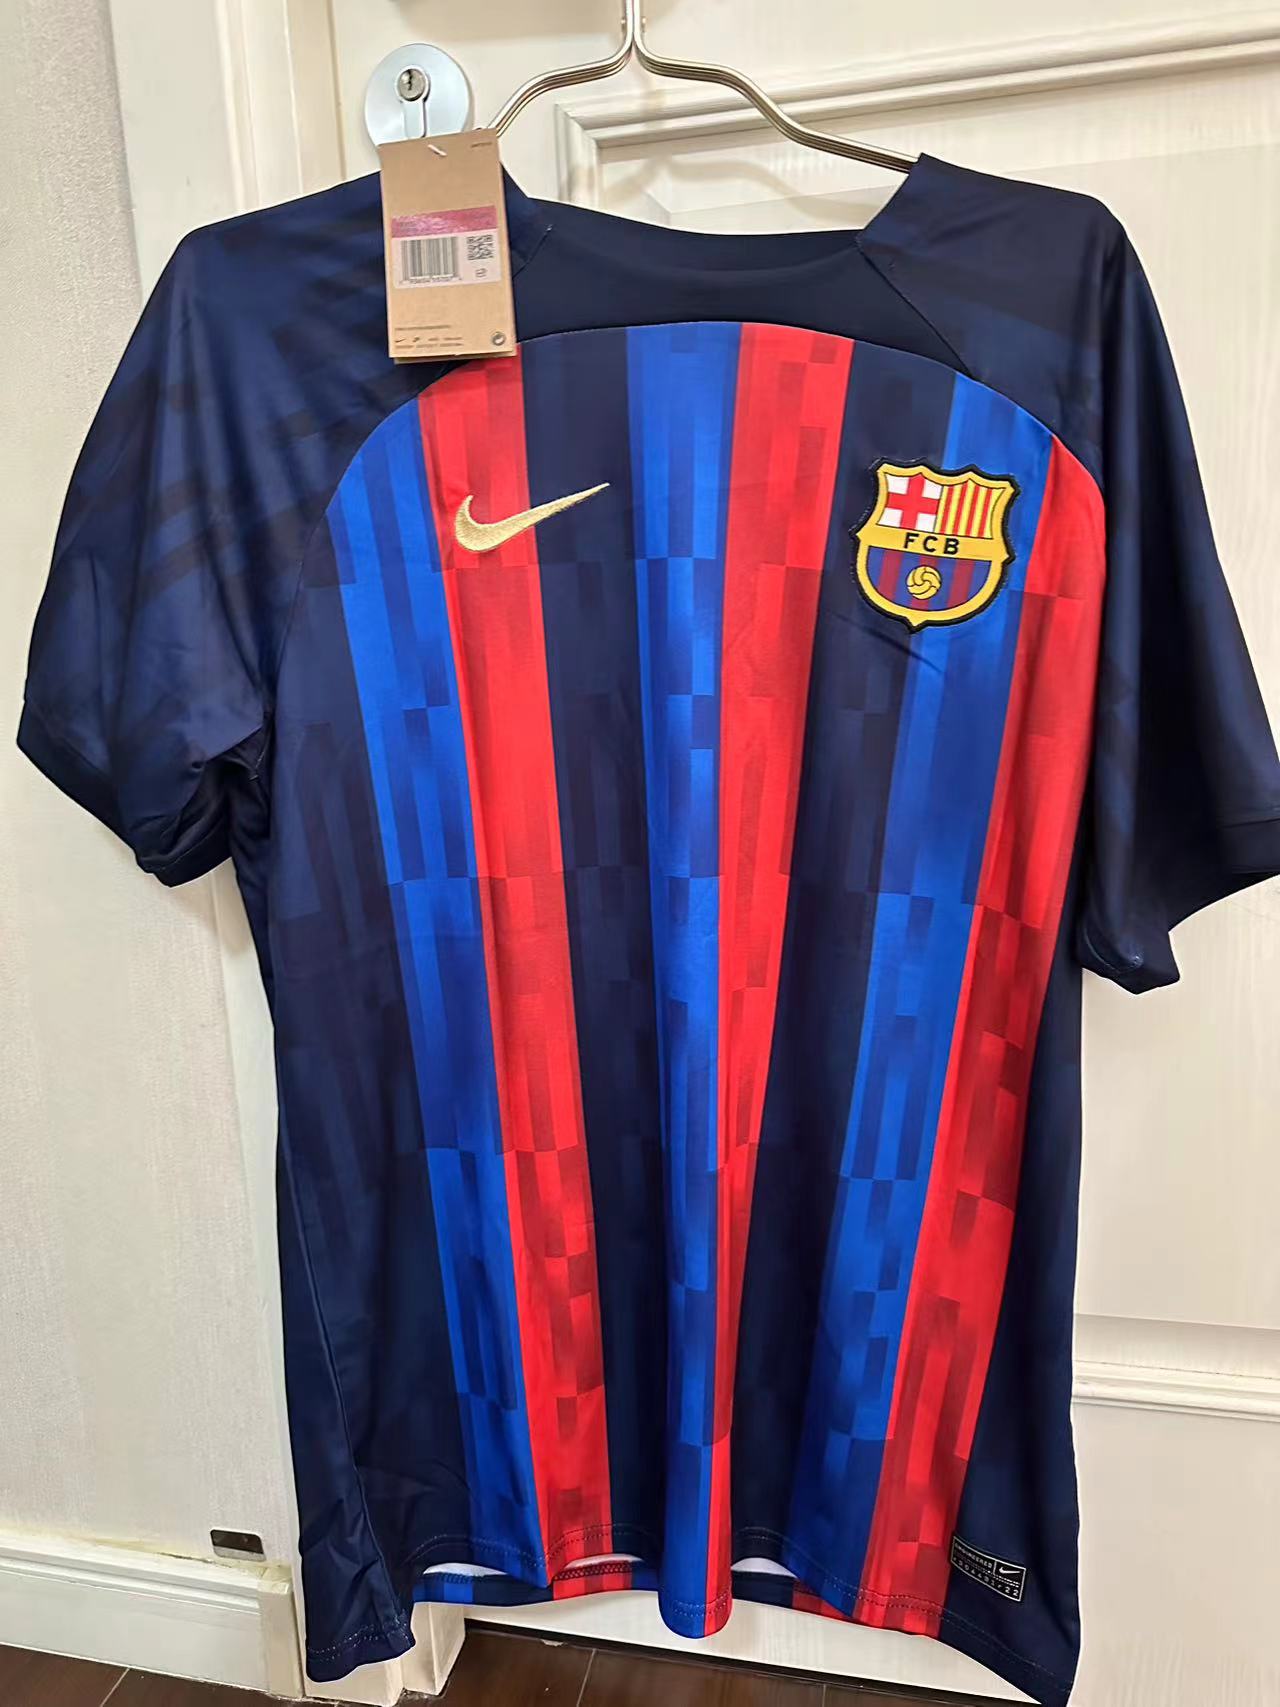 Camisetas De Fútbol Baratas - Talla S - 108 [Bratas0108] - €9.90 